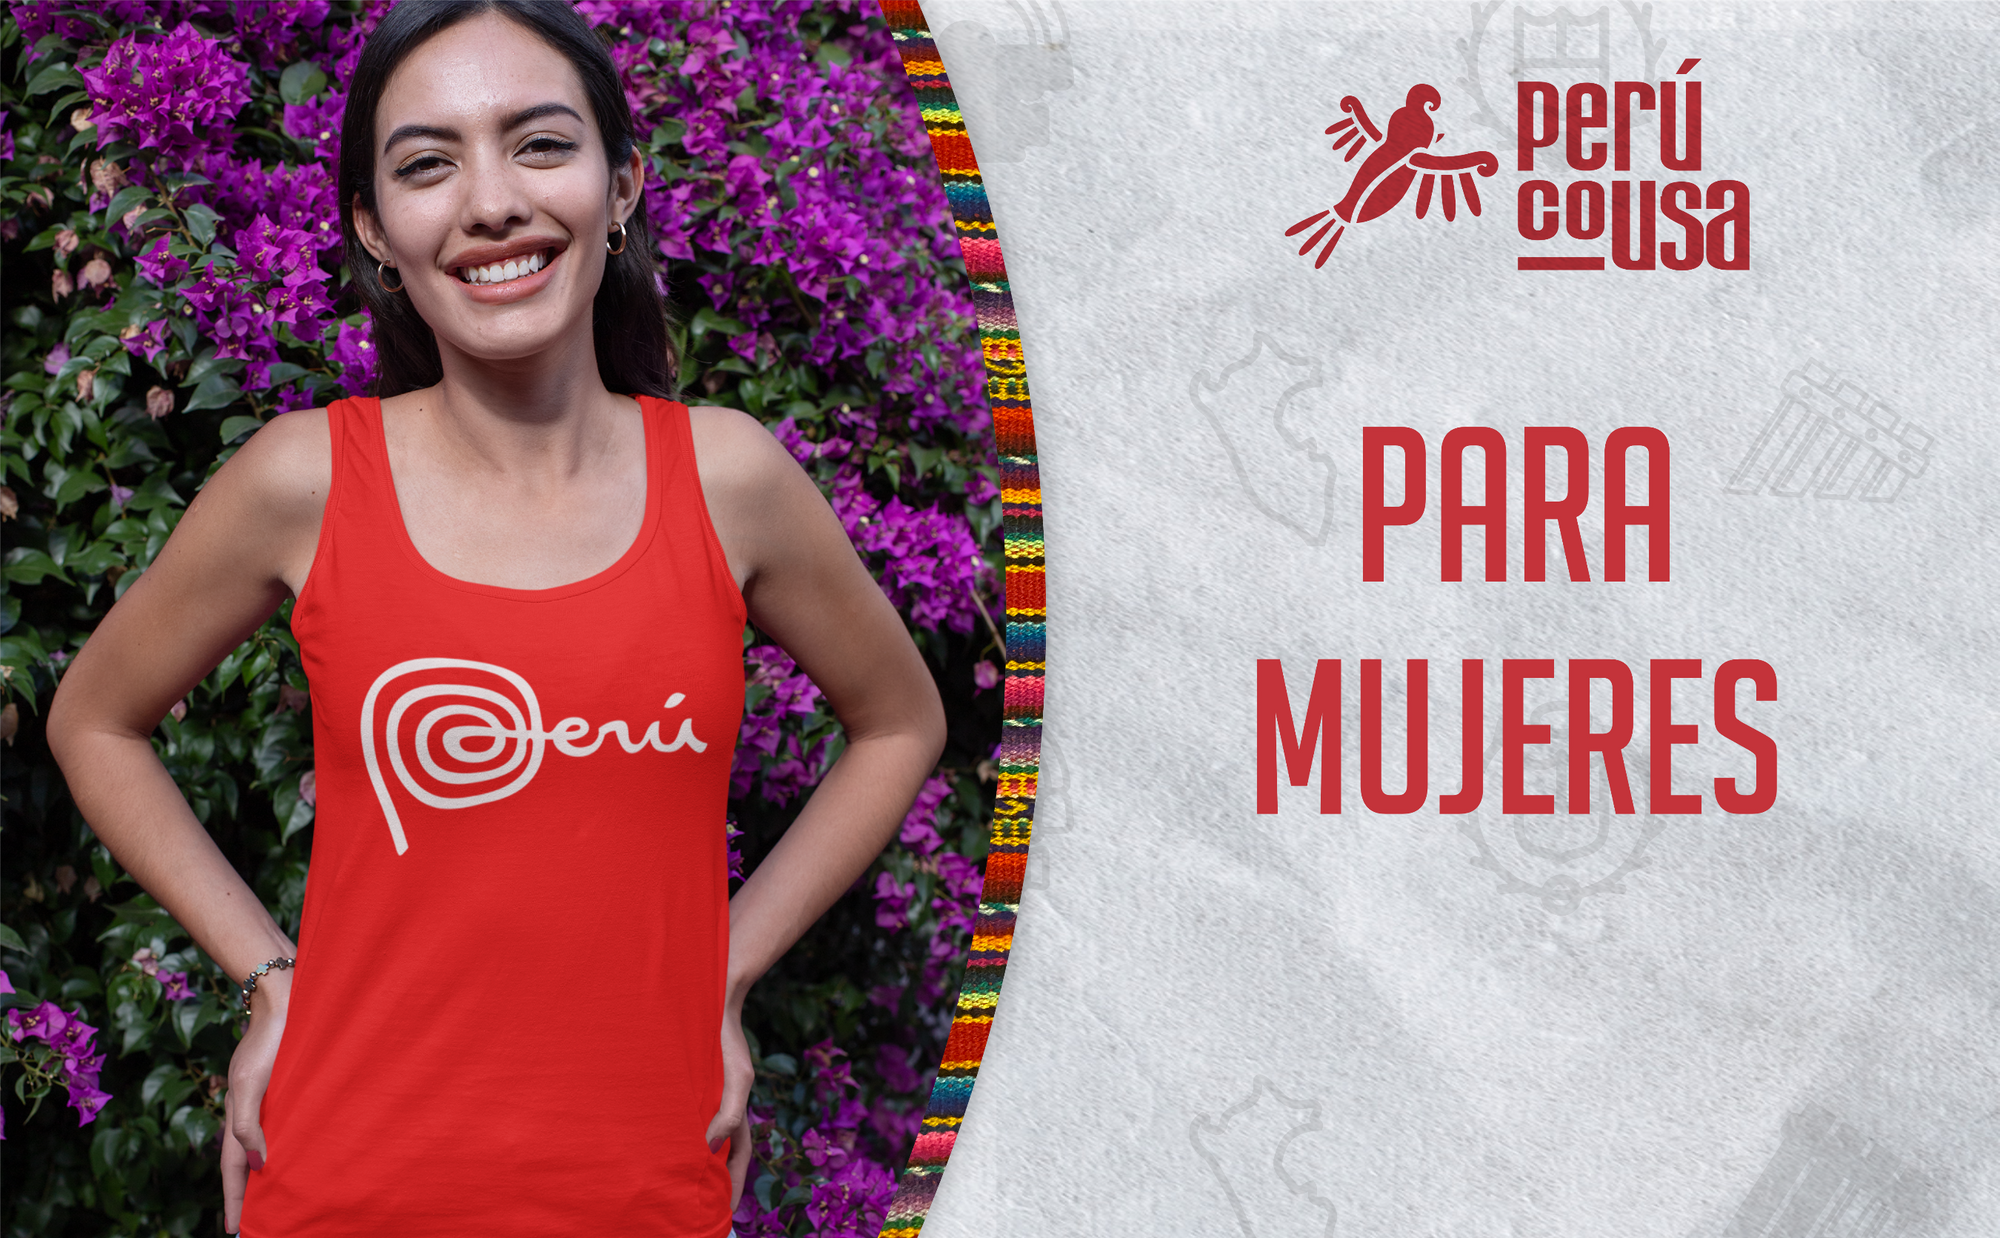 PeruCoUSA Peruvian Clothing Women Ropa Peruana Para Mujeres